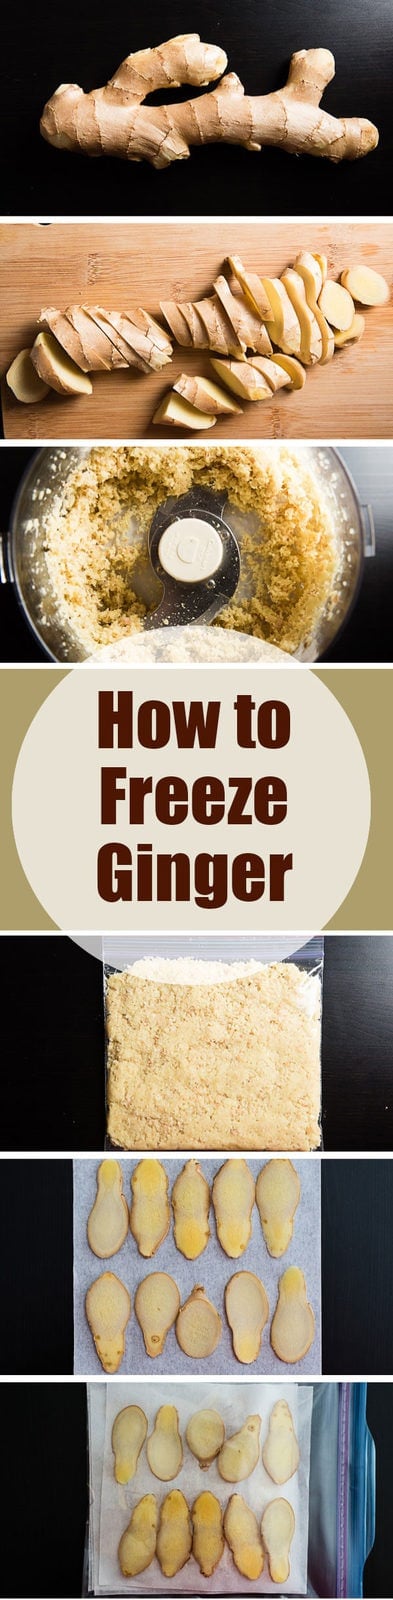 How to Freeze Ginger | omnivorescookbook.com